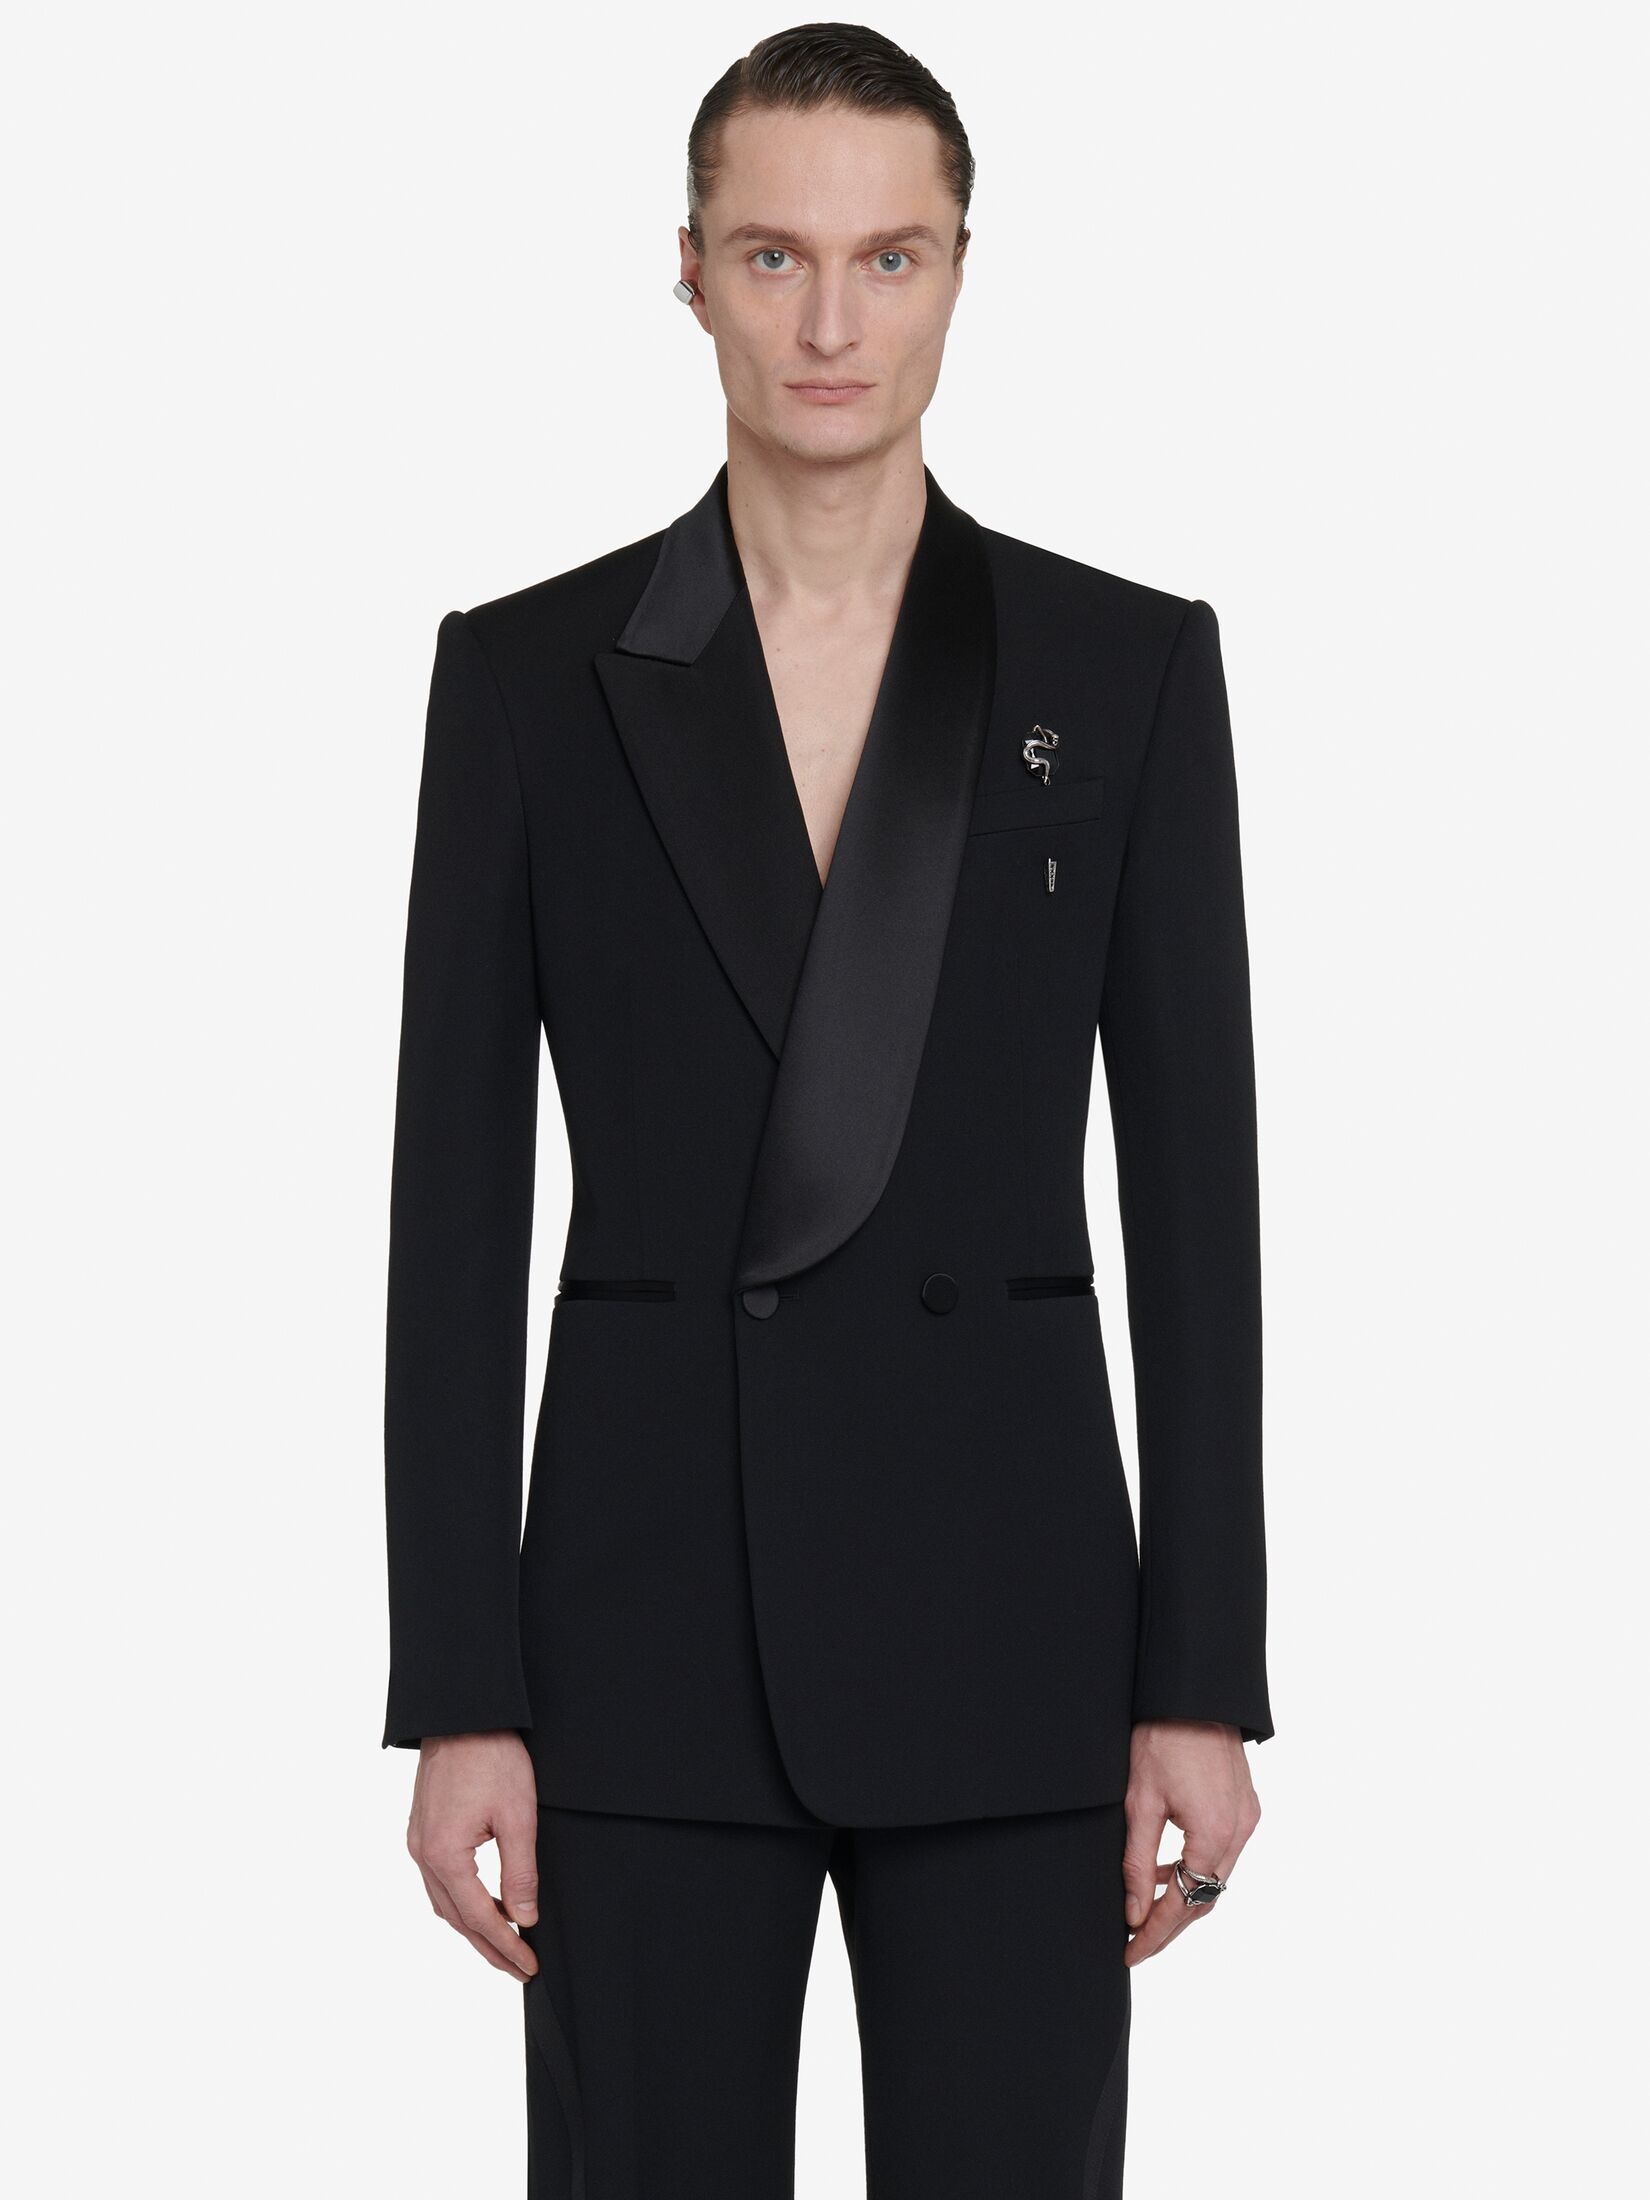 Men's Half Shawl Collar Tuxedo Jacket in Black - 5